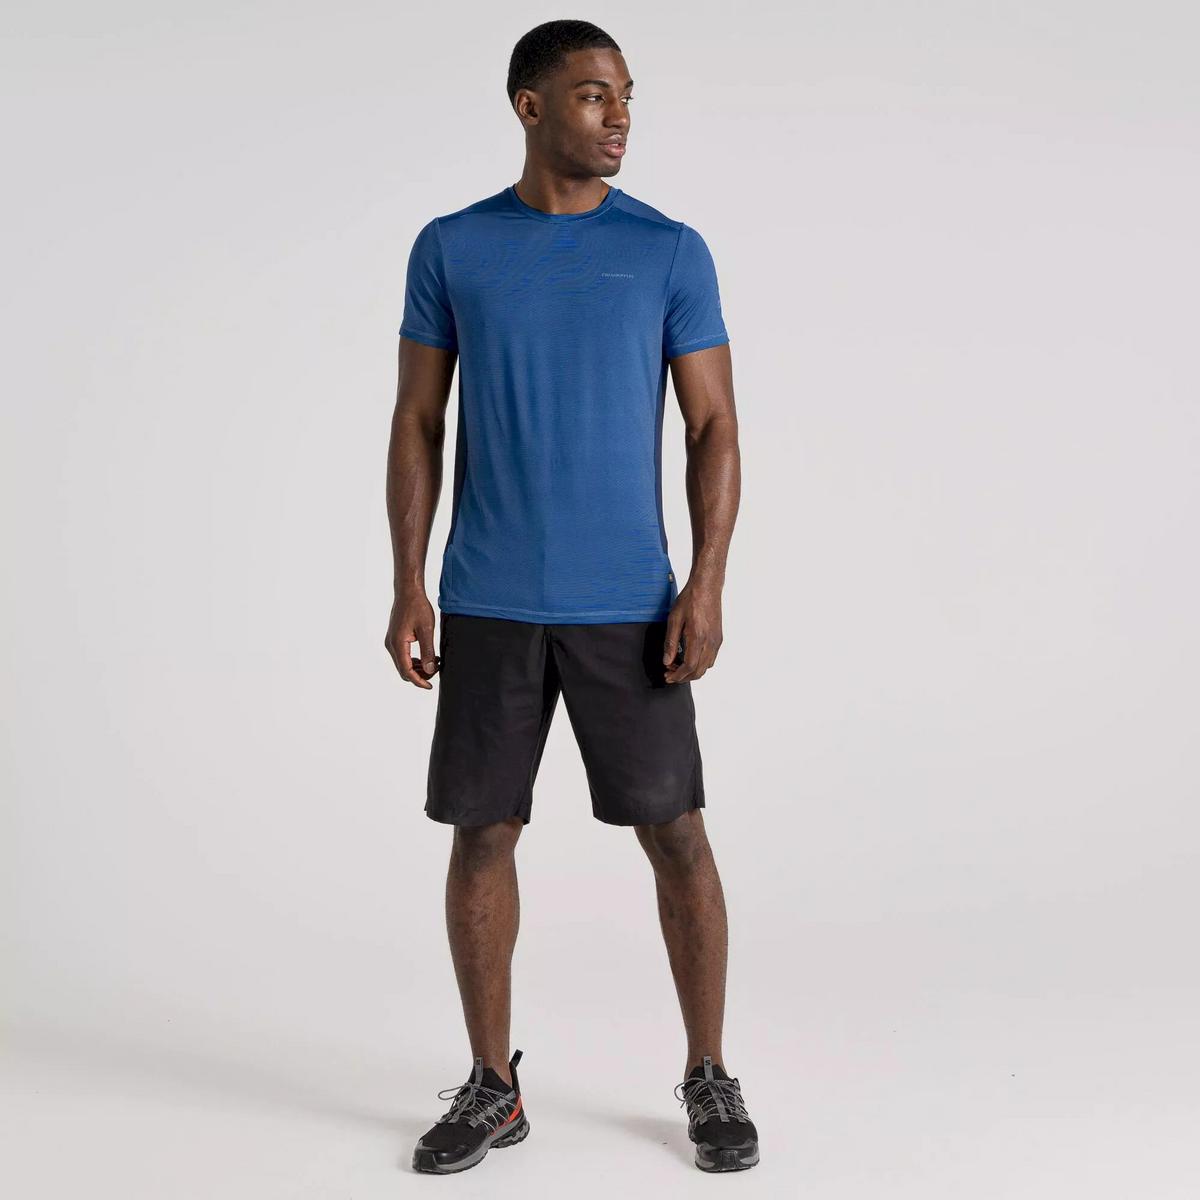 Craghoppers Men's Atmos Short Sleeve T-shirt - Bolt Blue